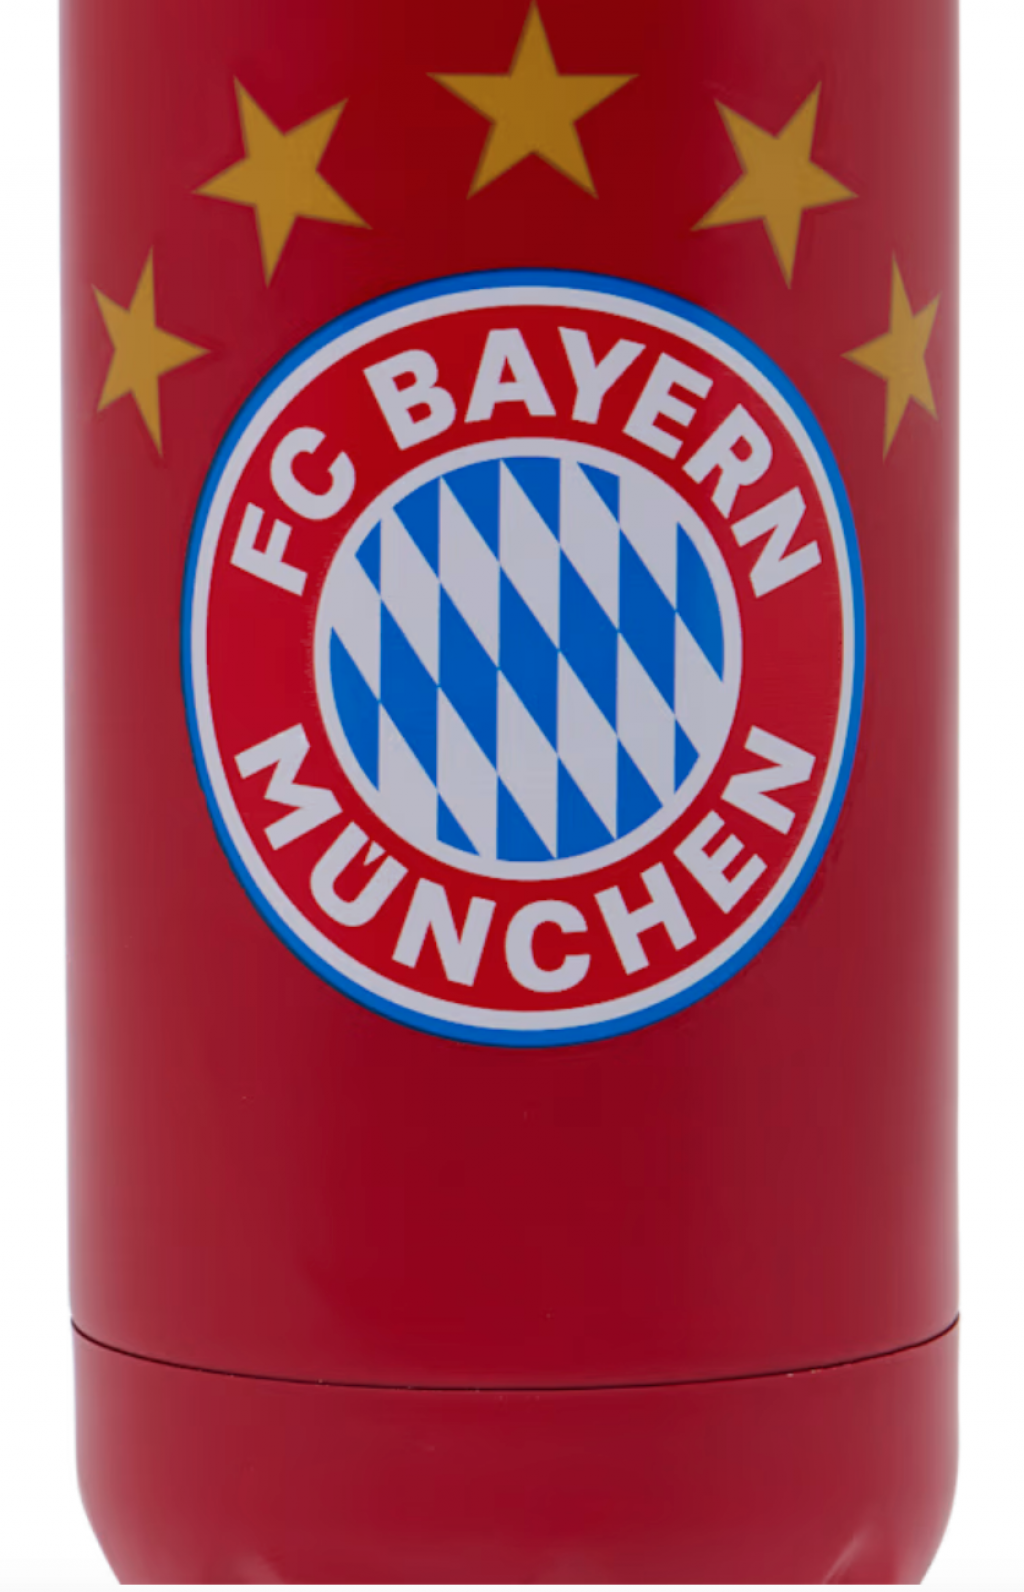 Hliníková láhev na pití s logem 5 hvězdiček FC Bayern München, červený, 0,5l